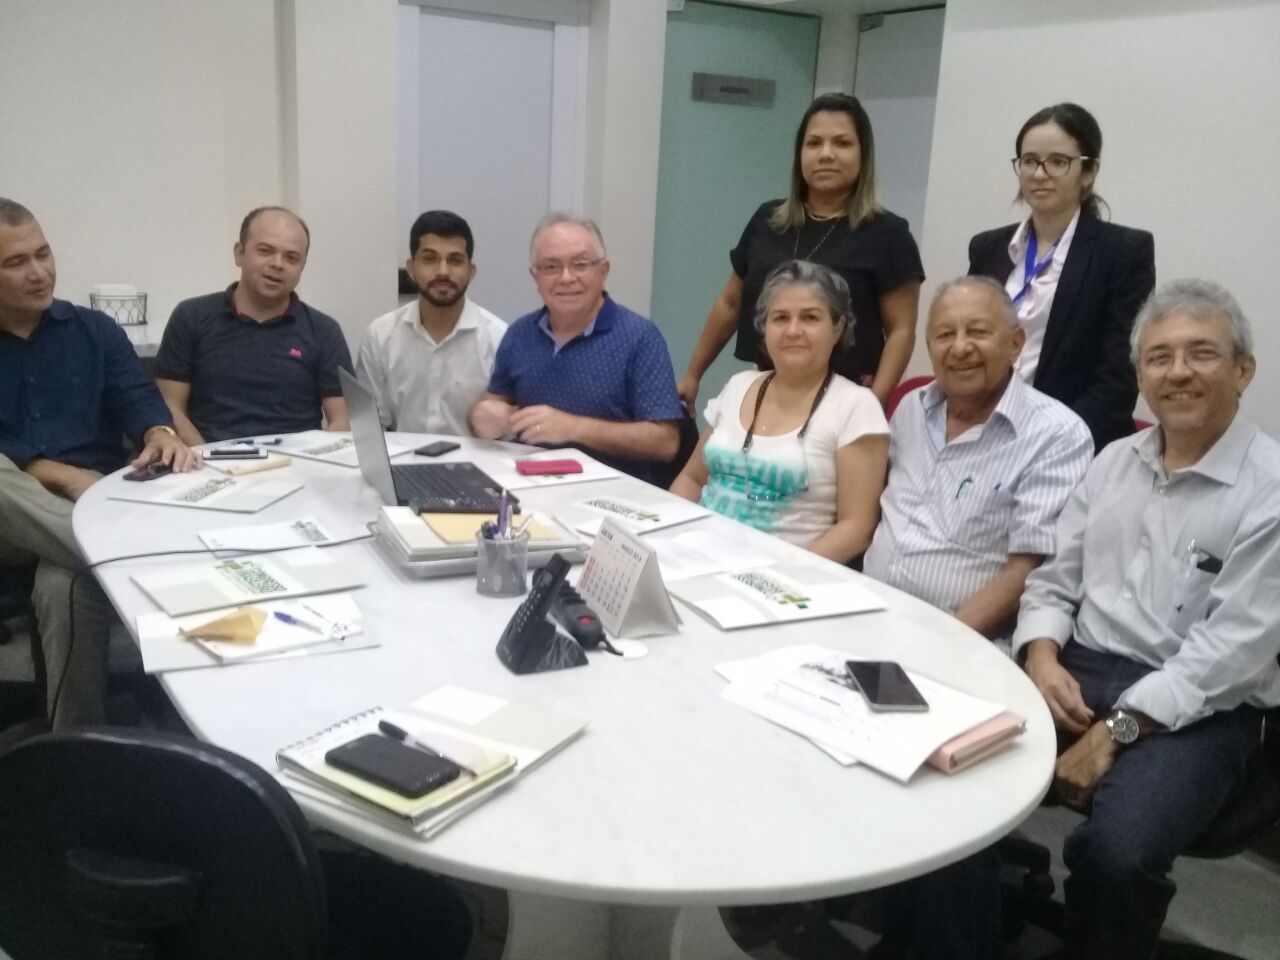 Dr. Pessoa visitou ontem a sede do Sindicato dos Médicos do Piauí. Ele convidou a médica Lúcia Santos para ser uma alternativa na disputa proporcional em seu grupo político esse ano